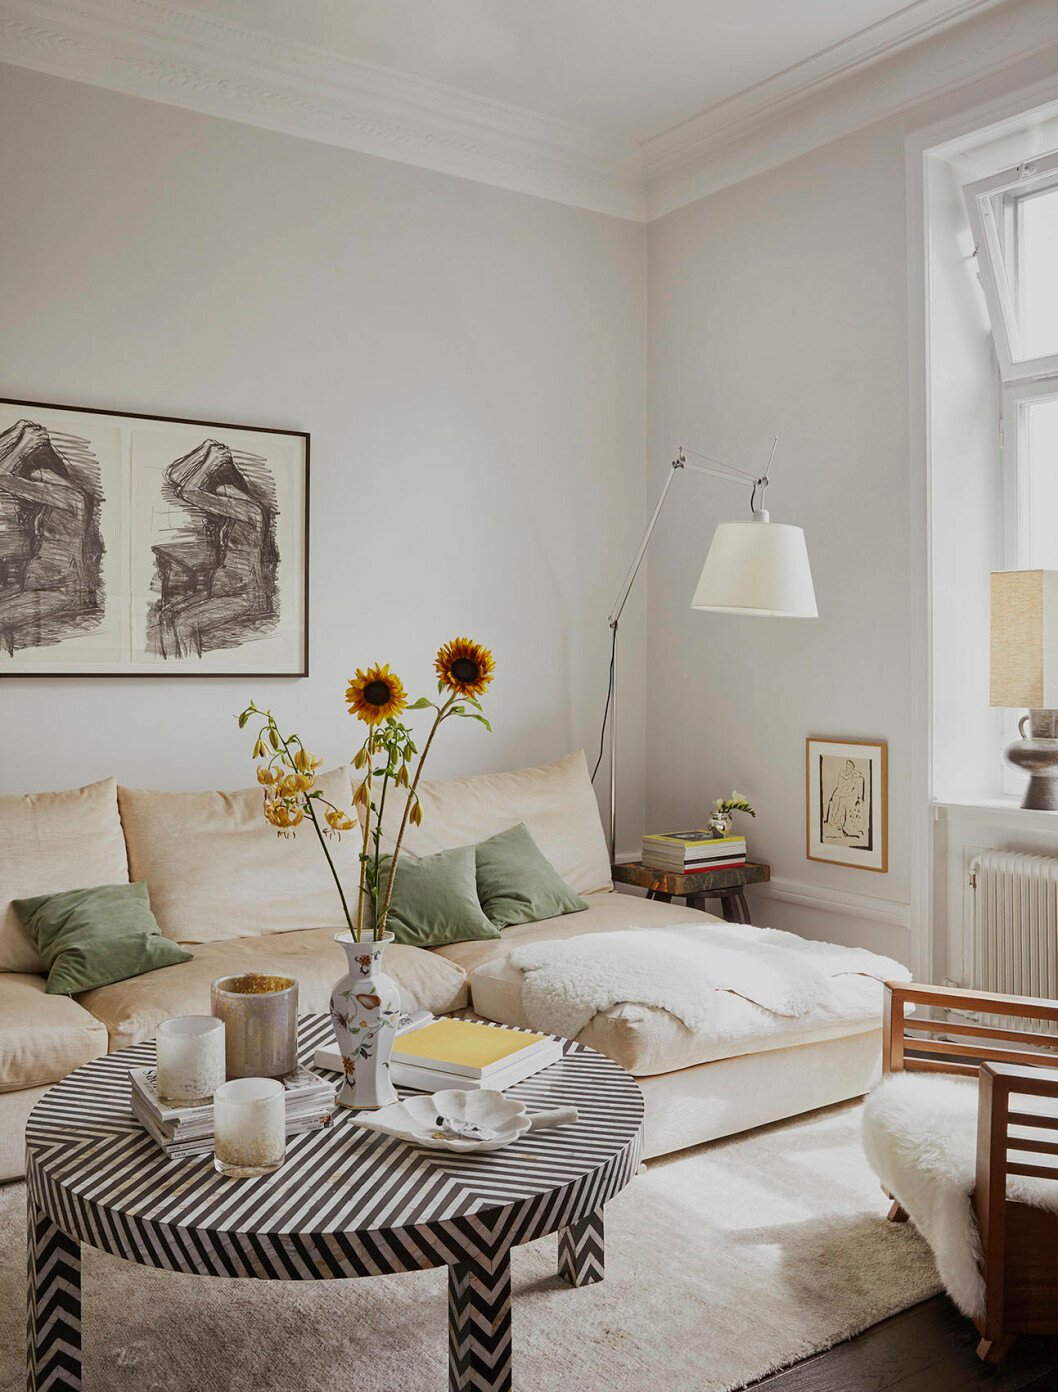 I Sofia Mehrotas lägenhet möts den skandinaviska minimalismen och den indiska värmen